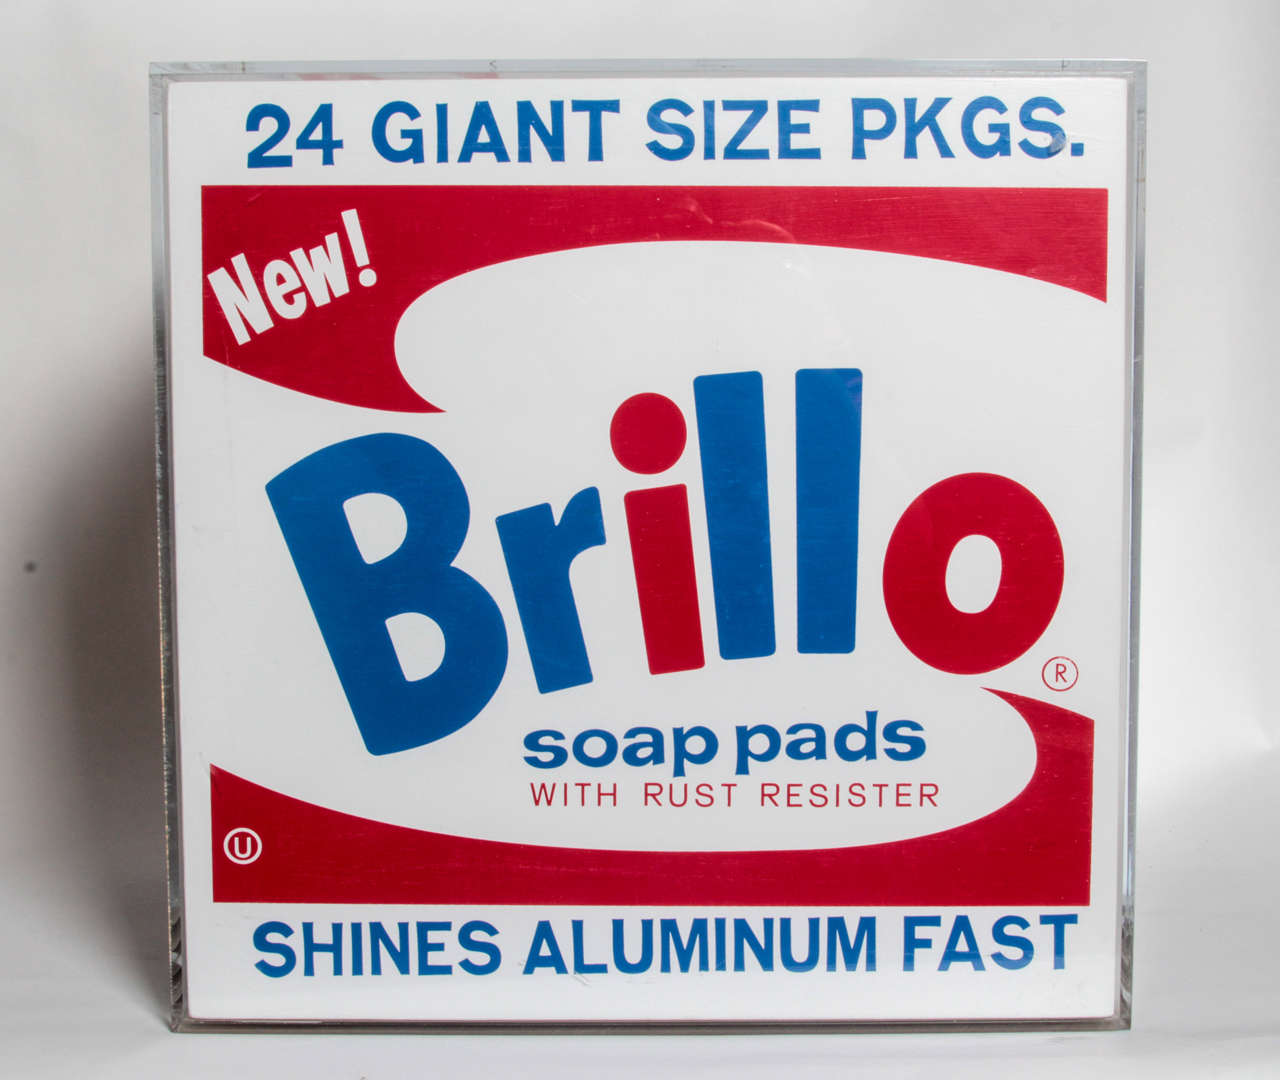 the brillo box